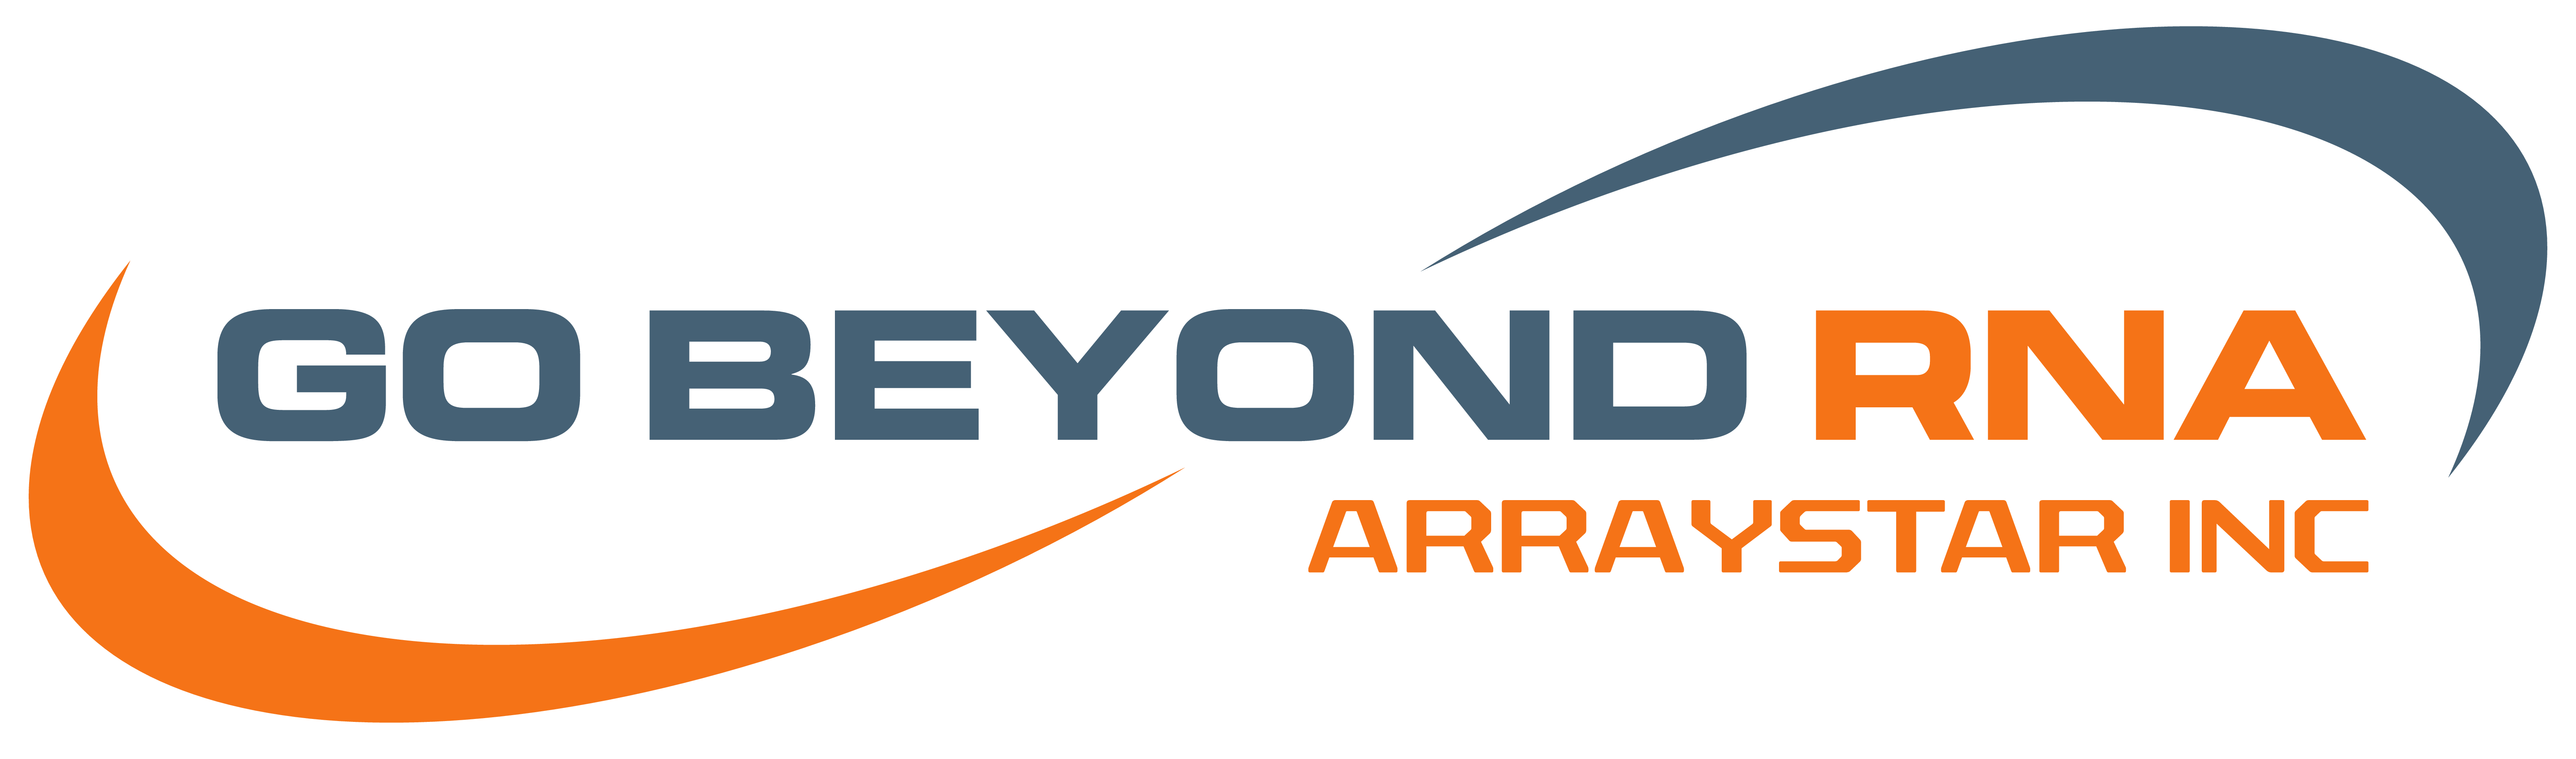 2022-05/arraystar-logo-2400-dpi.png